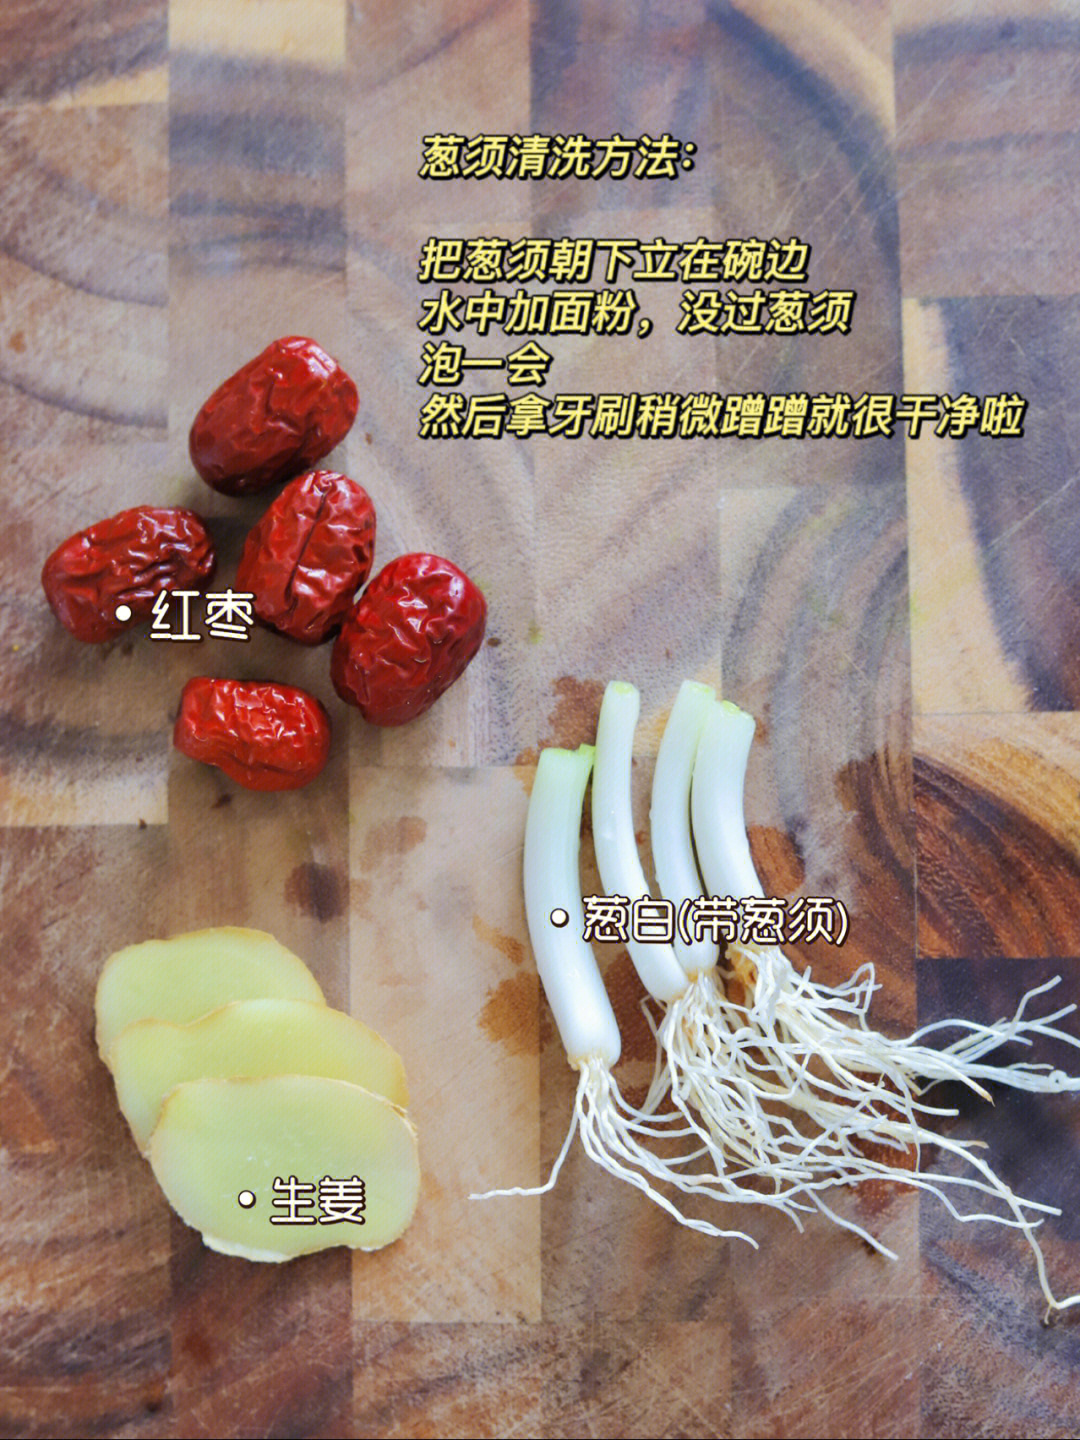 带葱须(一定要带葱须)3片生姜几颗红枣(没有放红糖,所以用红枣来中和